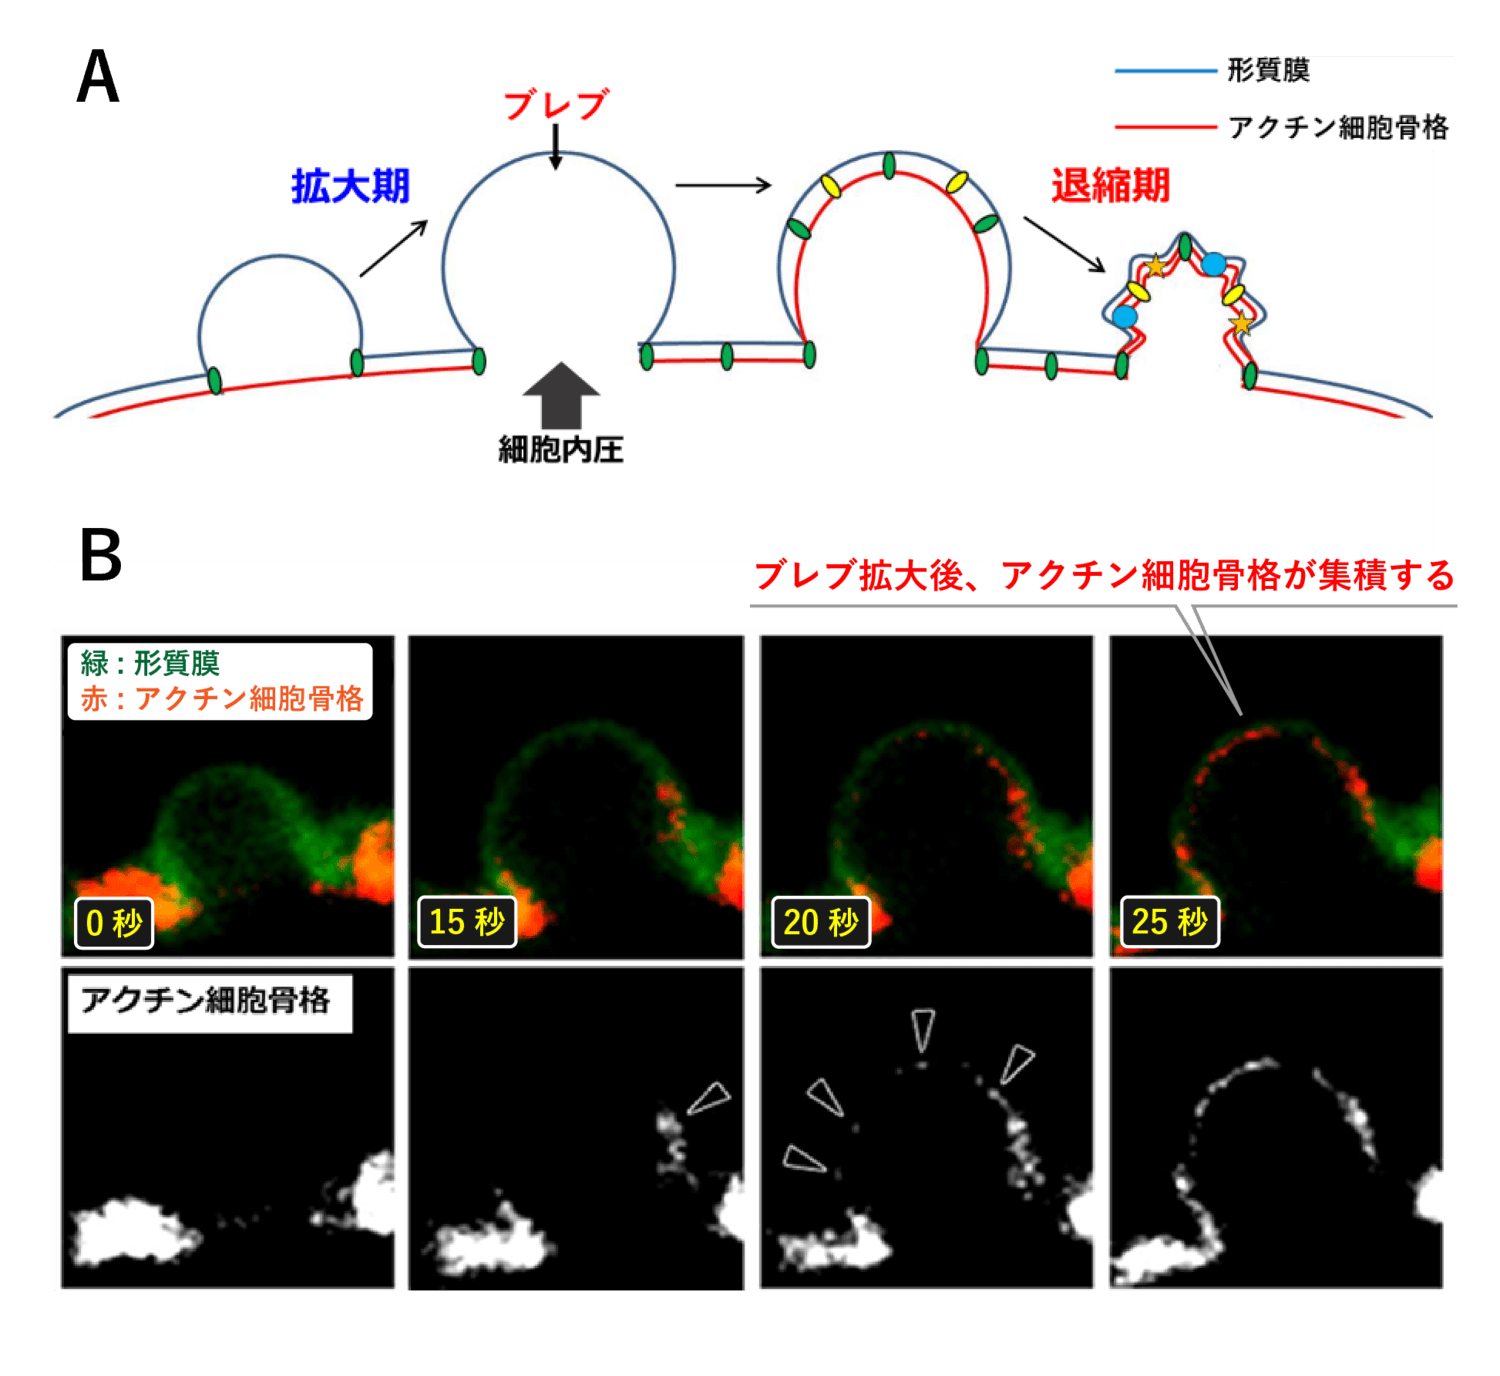 <dfn class="fig">図3</dfn>：<span class="qrinews-figure-title">ブレブの形成～退縮のサイクル</span>　&#12308;A&#12309;ブレブの形成-退縮の模式図。形質膜 (青線) がアクチン細胞骨格 (赤線) から剝がれると、細胞内圧に押されて形質膜が拡大し、ブレブと呼ばれる球状の突起構造が形成される。ブレブがしばらく拡大した後、次第にアクチン細胞骨格がブレブ形質膜の裏に集積し始め、最終的にアクチンにミオシンが結合し、アクチンを手繰り寄せることでブレブは退縮する。&#12308;B&#12309培養細胞のブレブにおけるアクチン細胞骨格の再集積。緑は形質膜を、赤はアクチン細胞骨格を表す。退縮時、黒矢頭で示す部分で、アクチン細胞骨格が次第に集まる様子が観察される。図と写真は青木さんより提供。